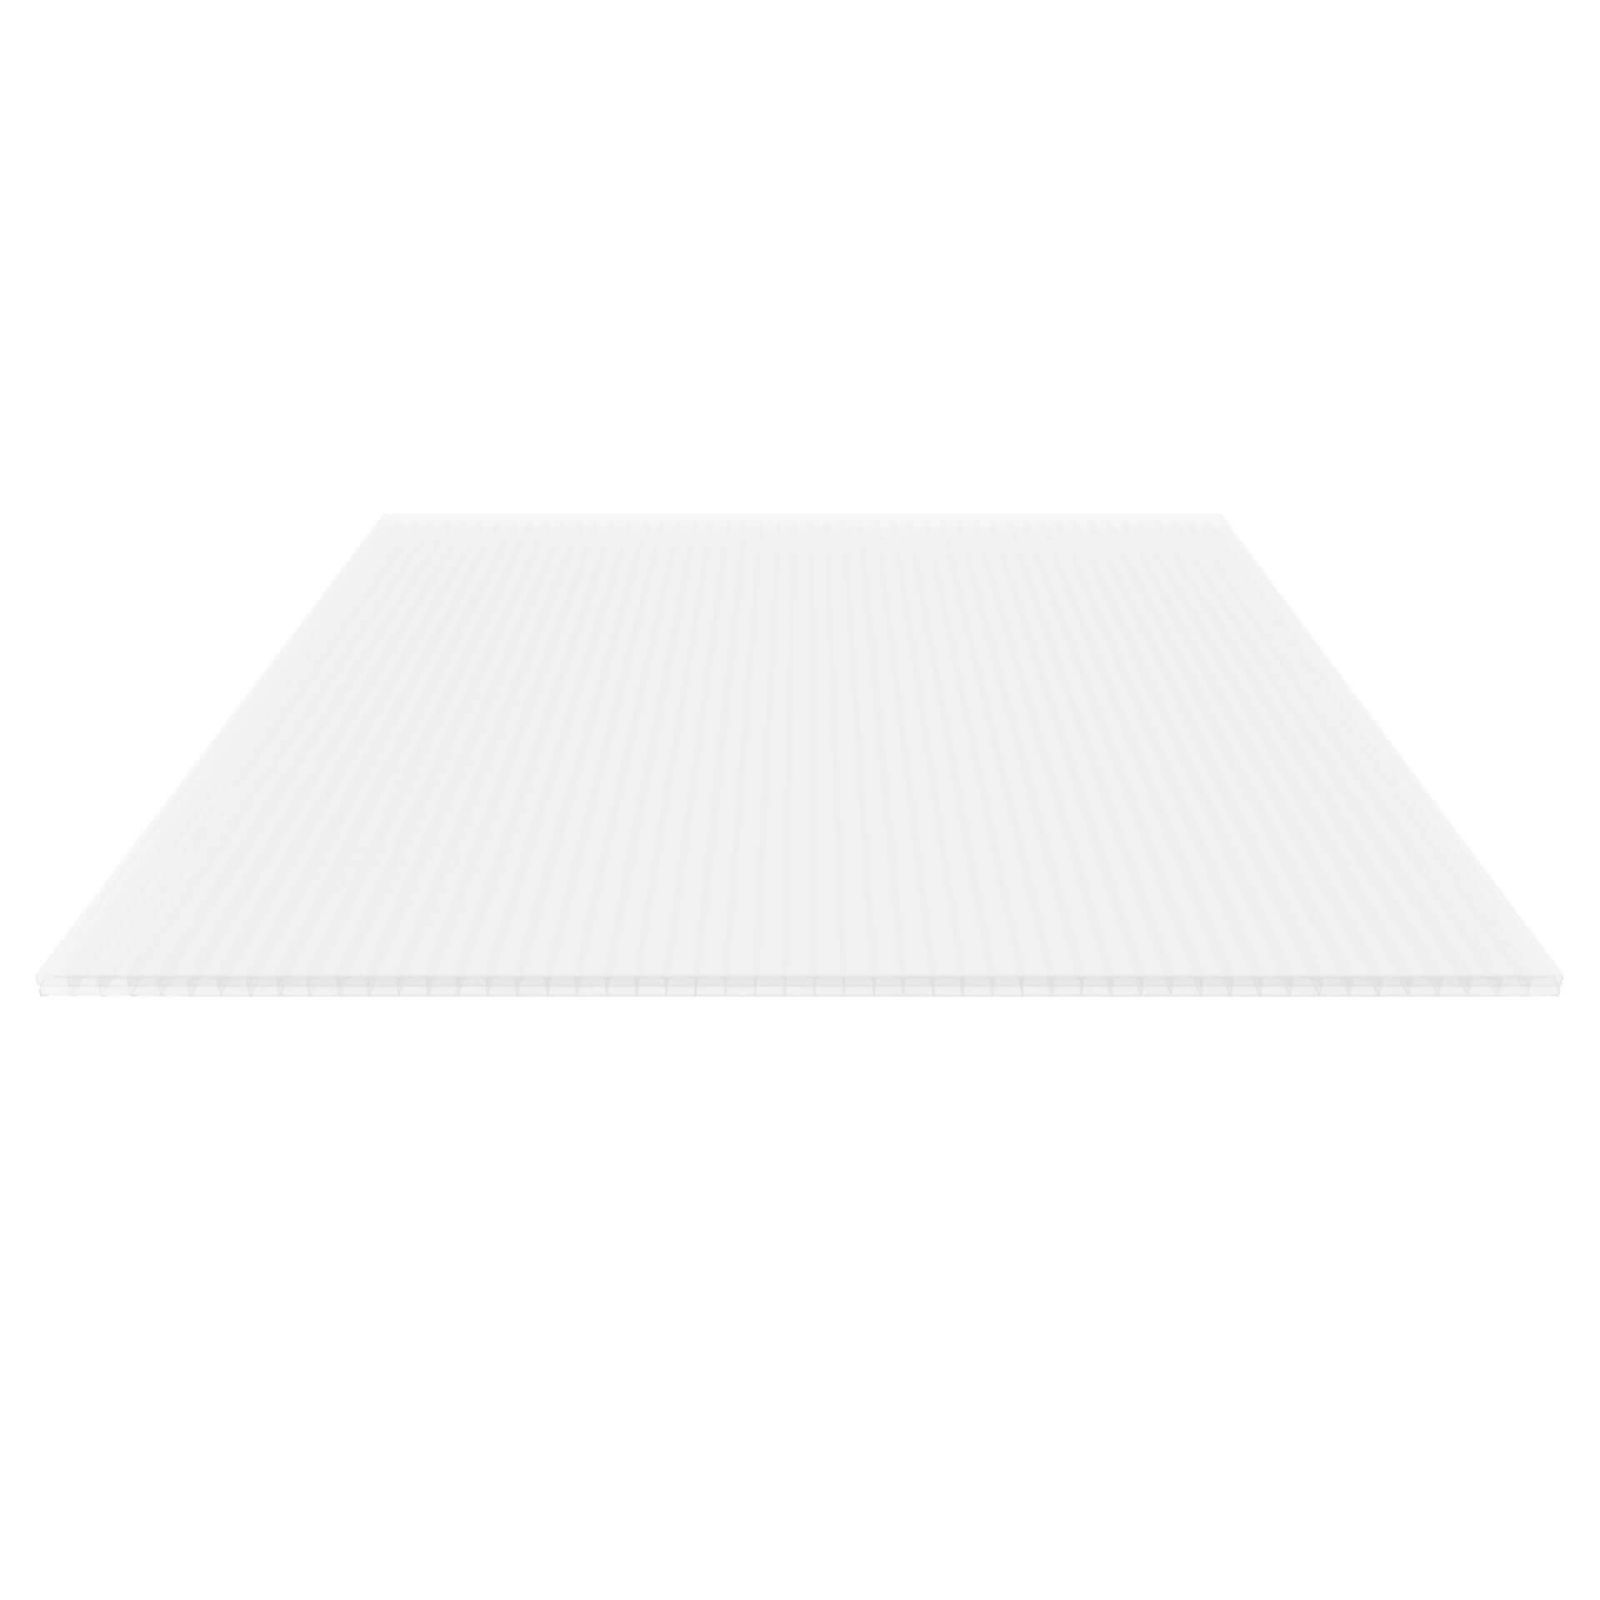 Zoom Modal | Polycarbonaat kanaalplaat | 16 mm | Breedte 1200 mm | Opaal wit | 500 mm | 0